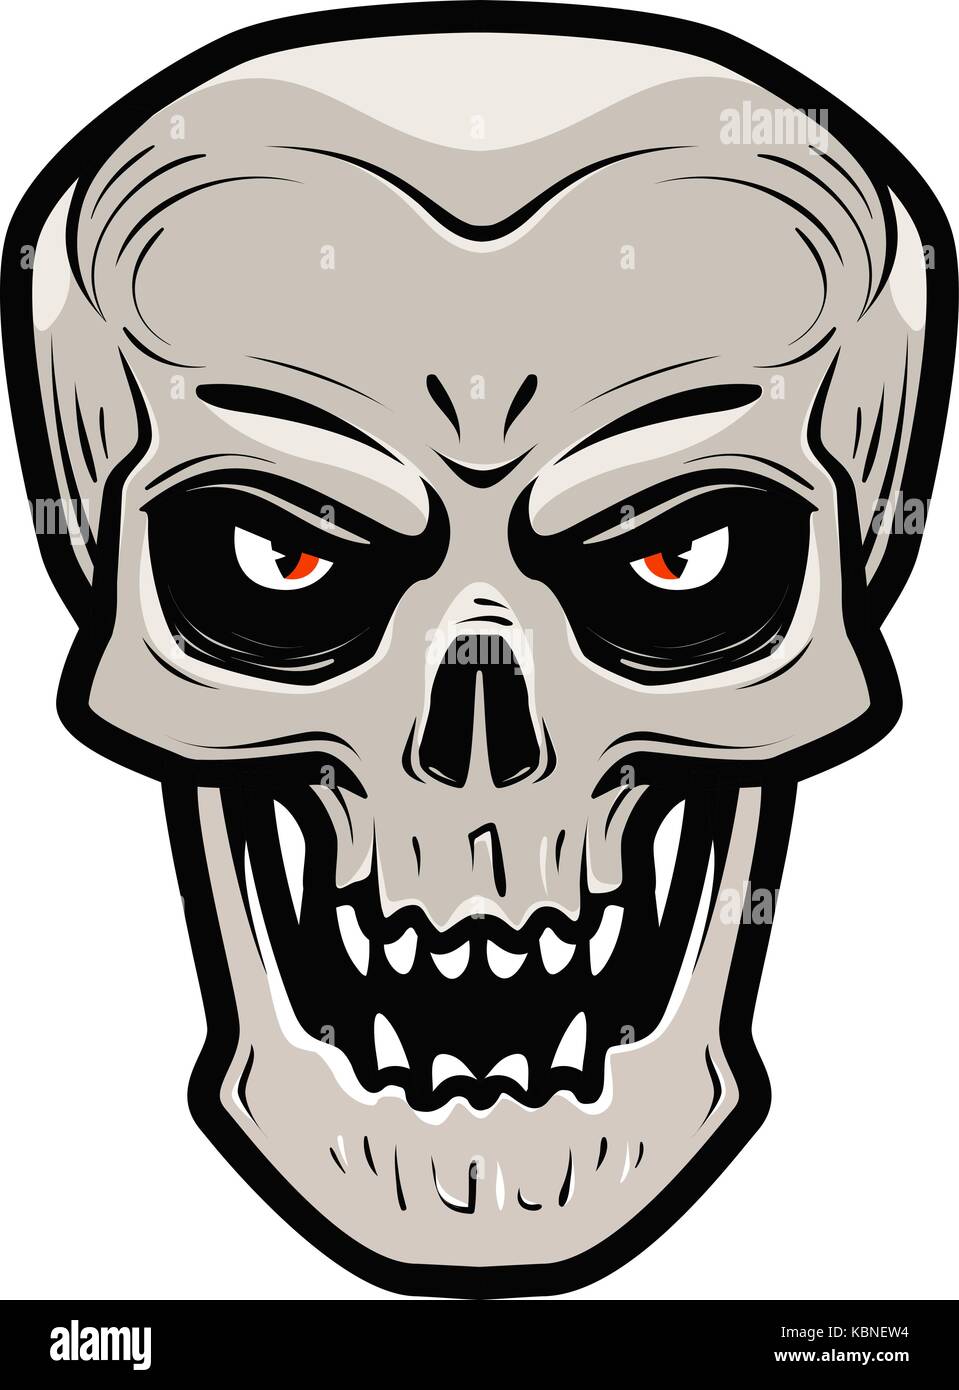 Angry skull. Monster, dead, zombie, halloween, devil symbol. Cartoon vector illustration Stock Vector